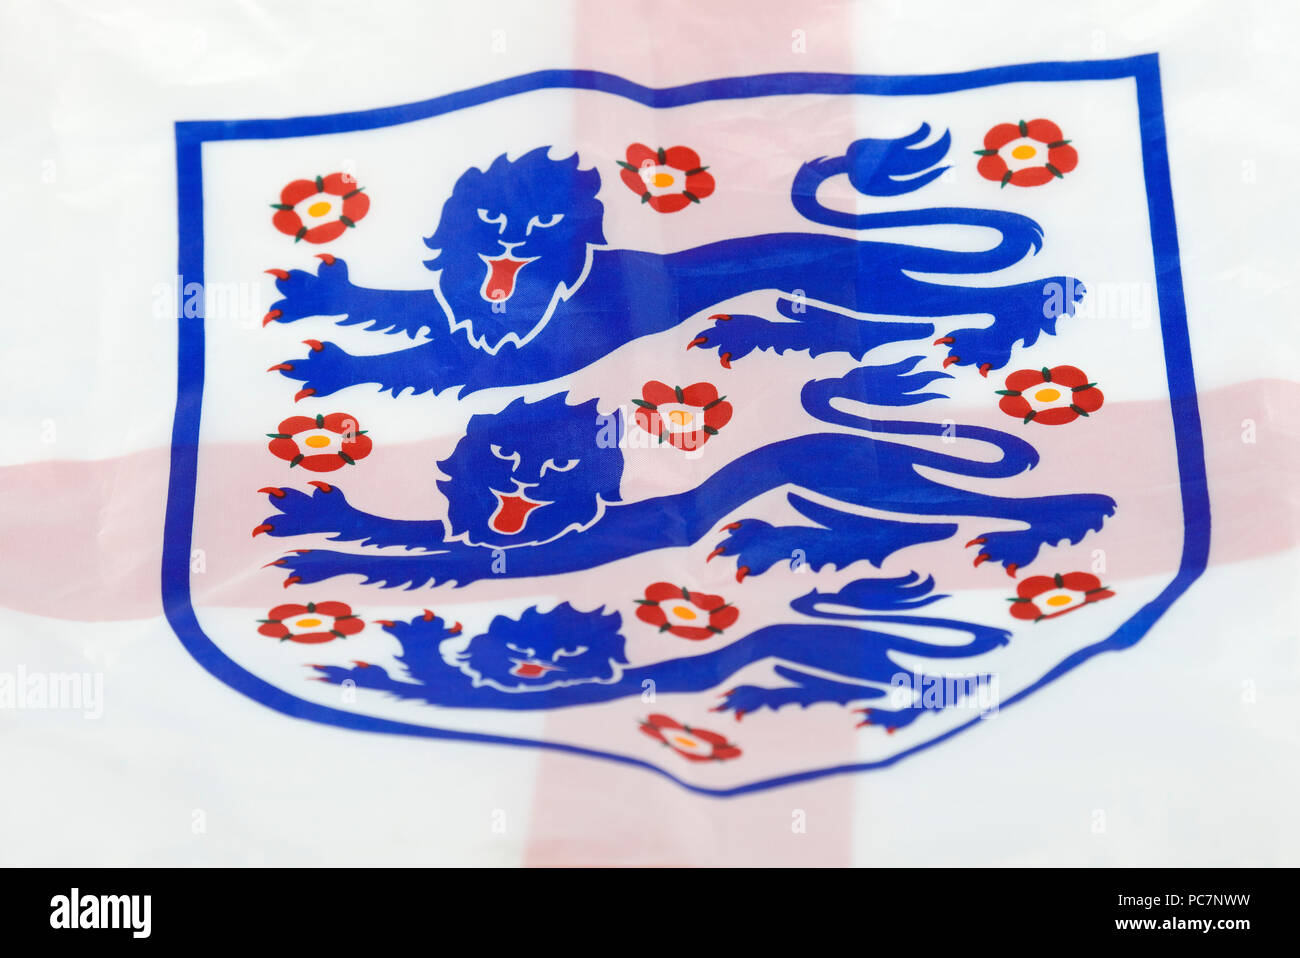 England fußball logo -Fotos und -Bildmaterial in hoher Auflösung – Alamy